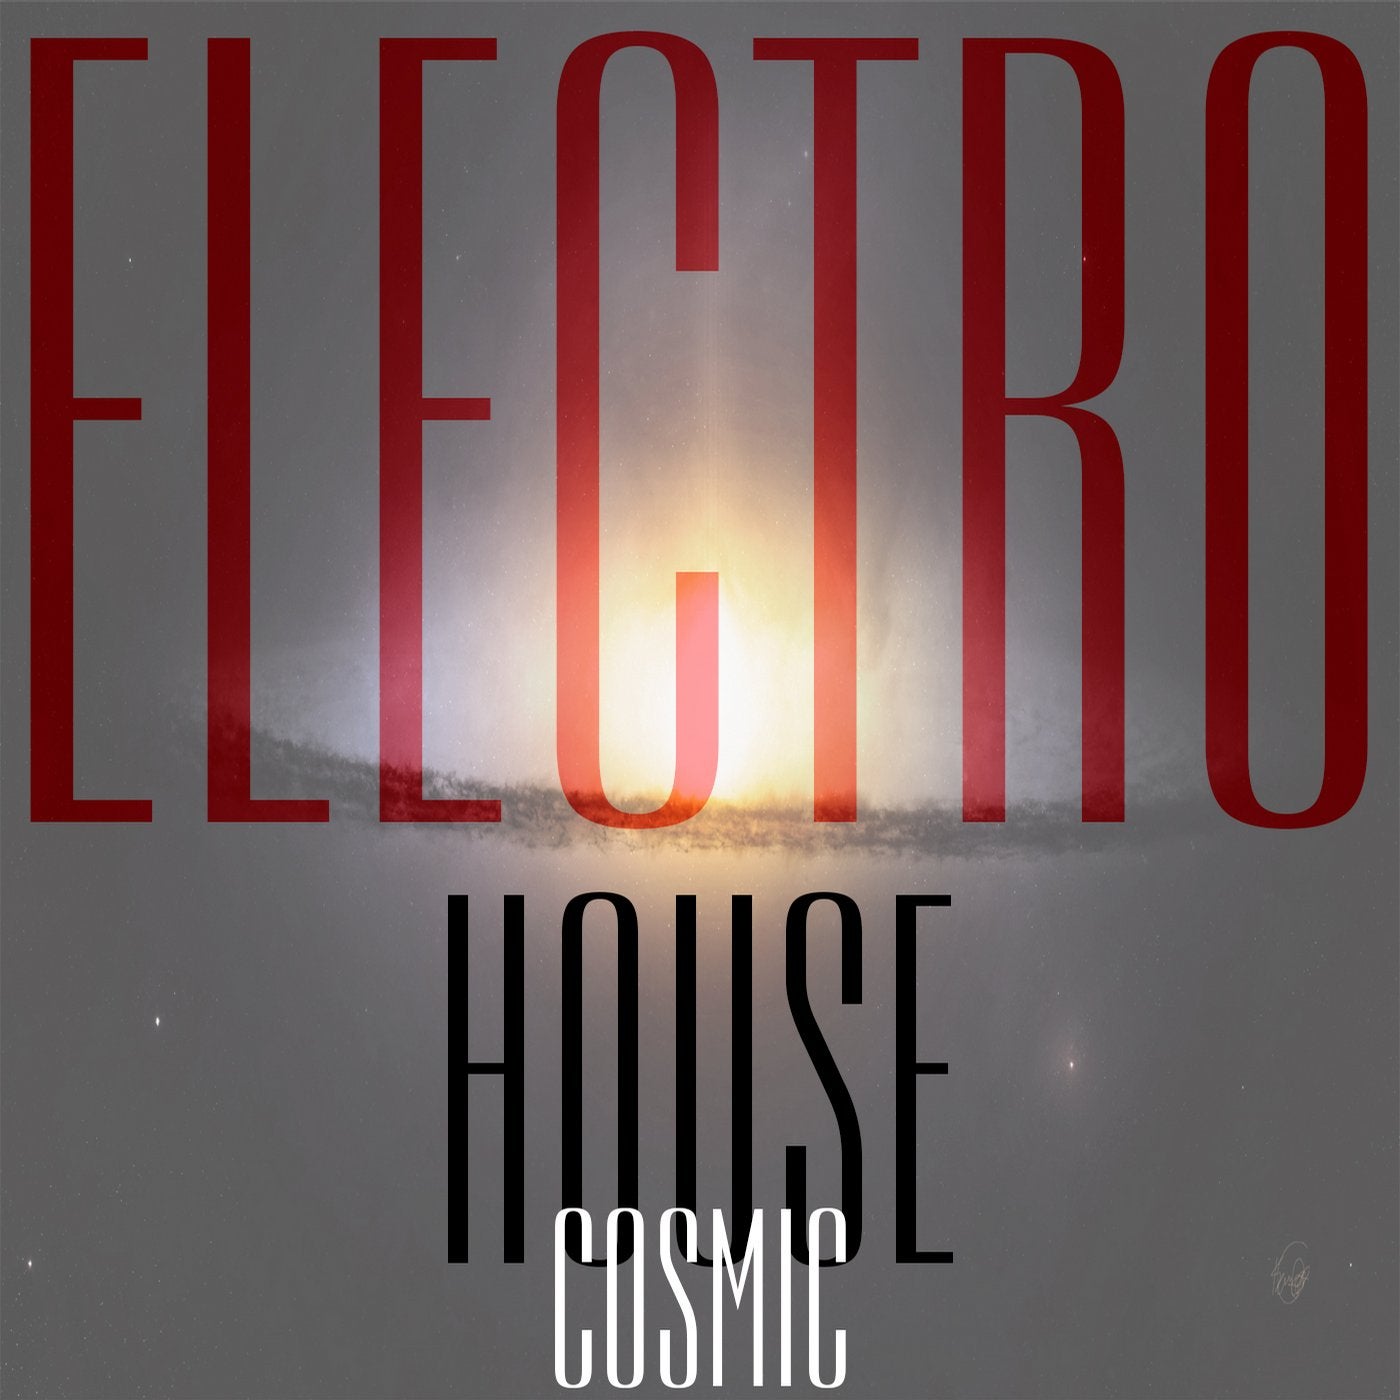 Cosmic Electro House